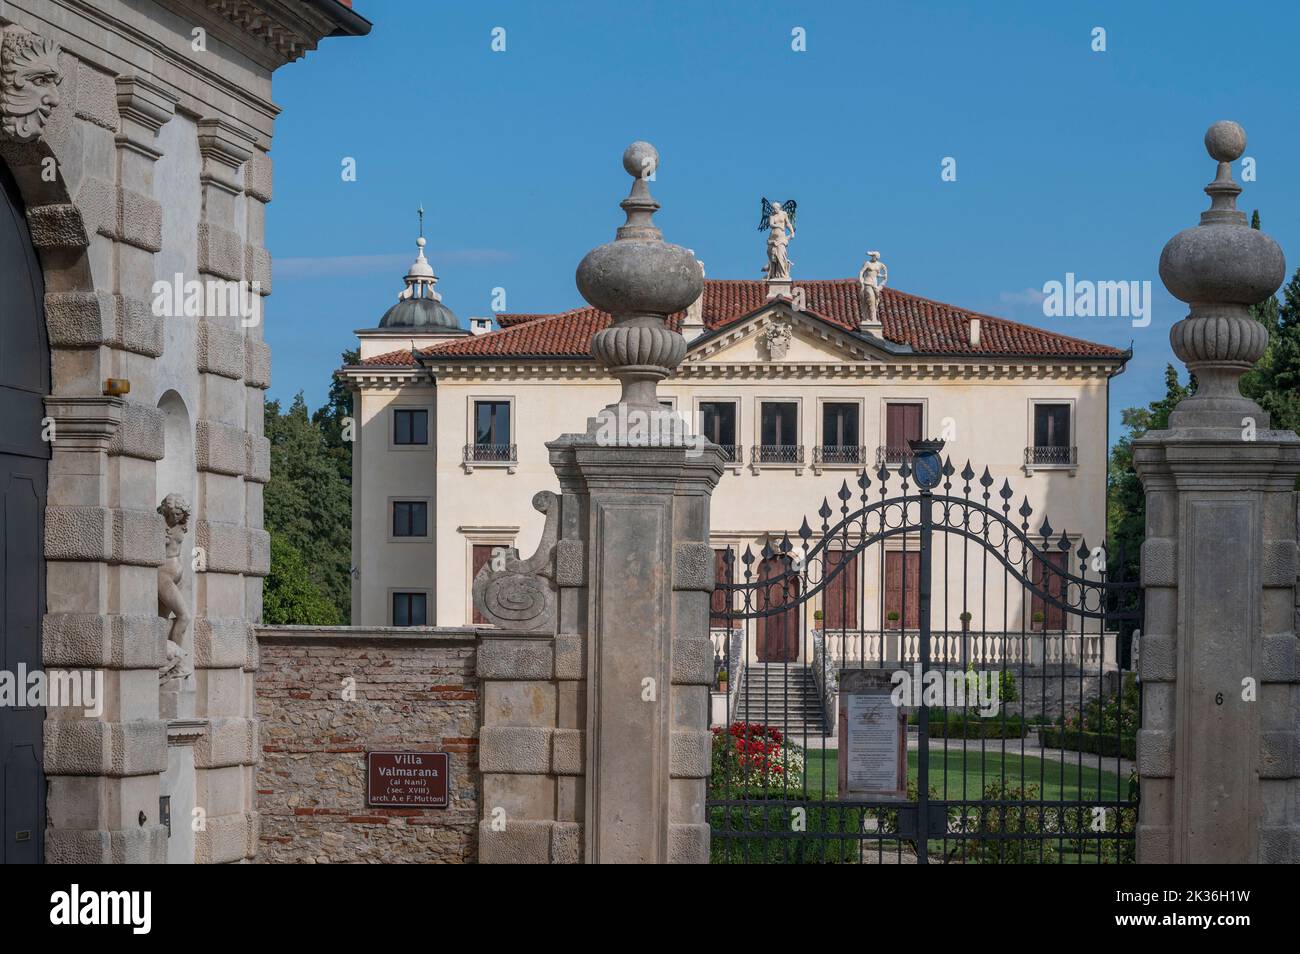 Villa Valmarana ai nani, Vicenza, Vénétie, Italie Banque D'Images